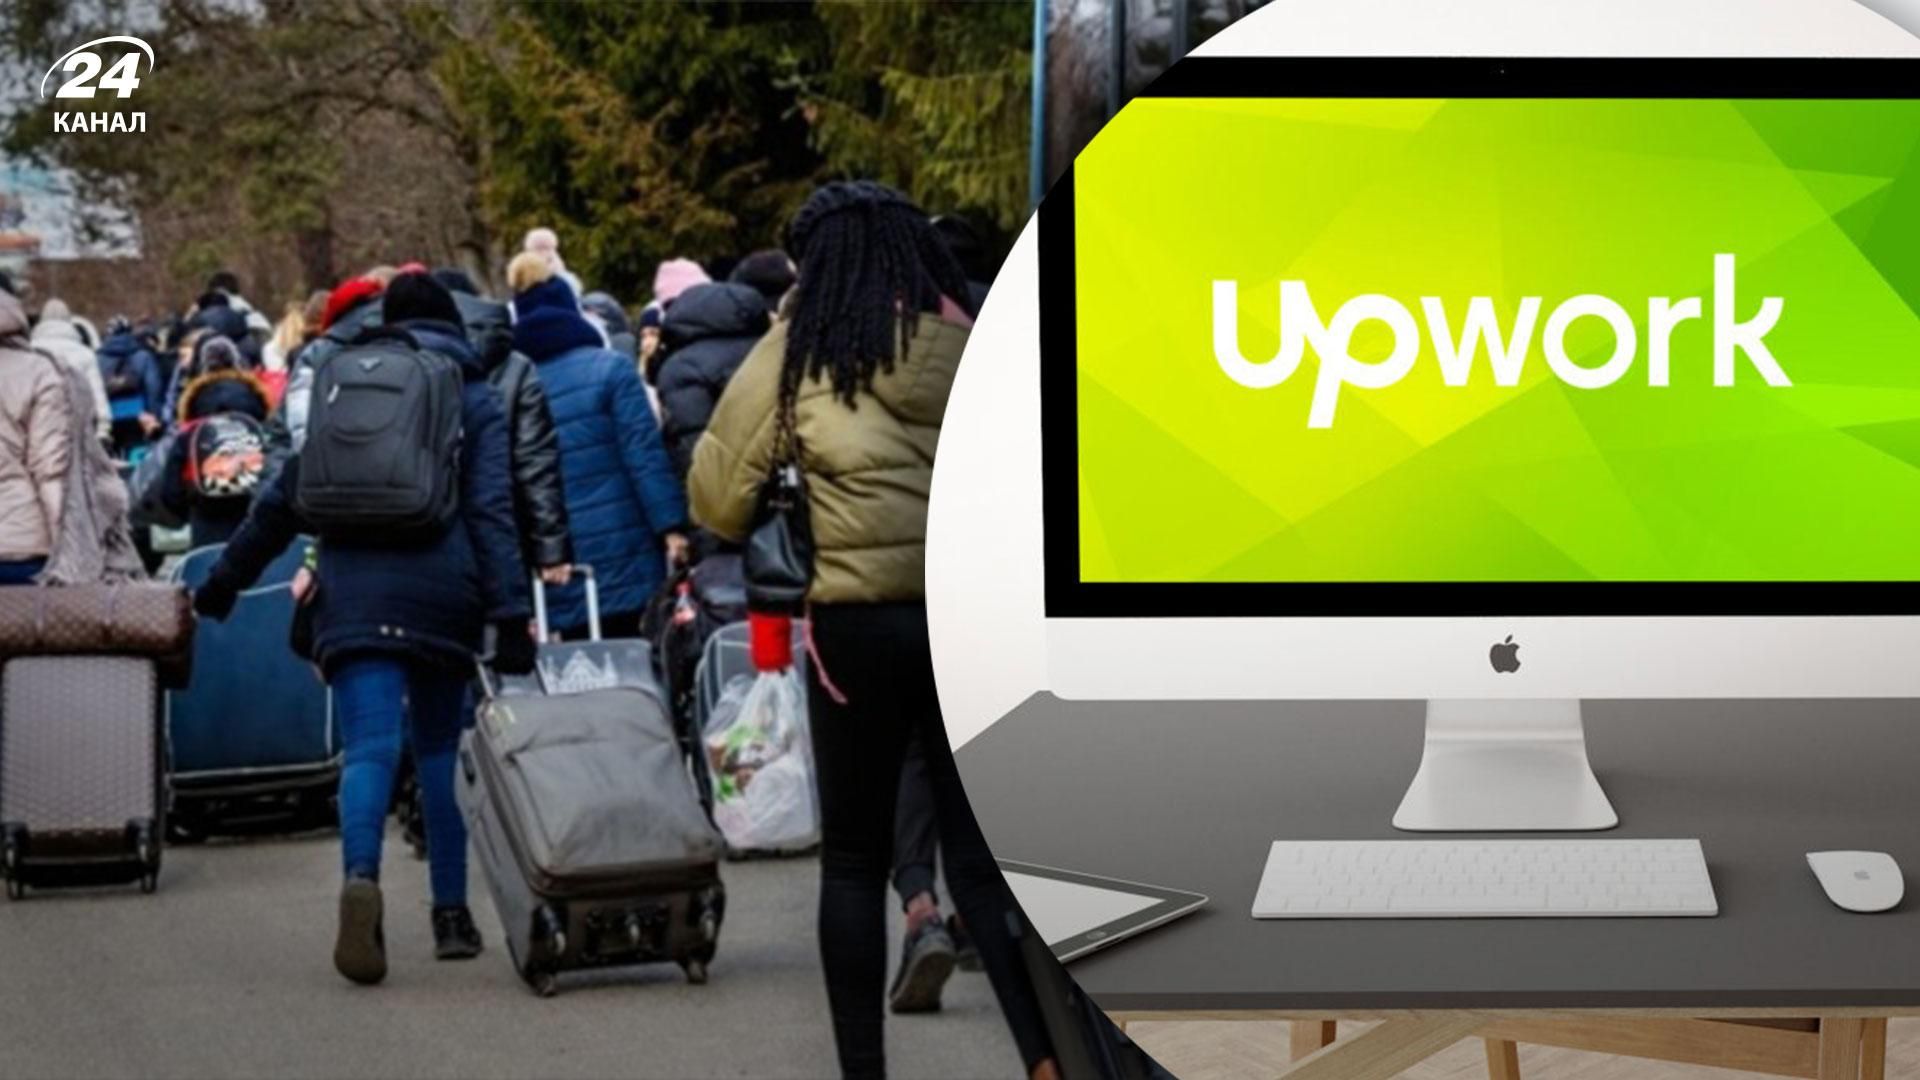 Міжнародний маркетплейс Upwork запустив ініціативу для переміщених українців, які шукають роботу